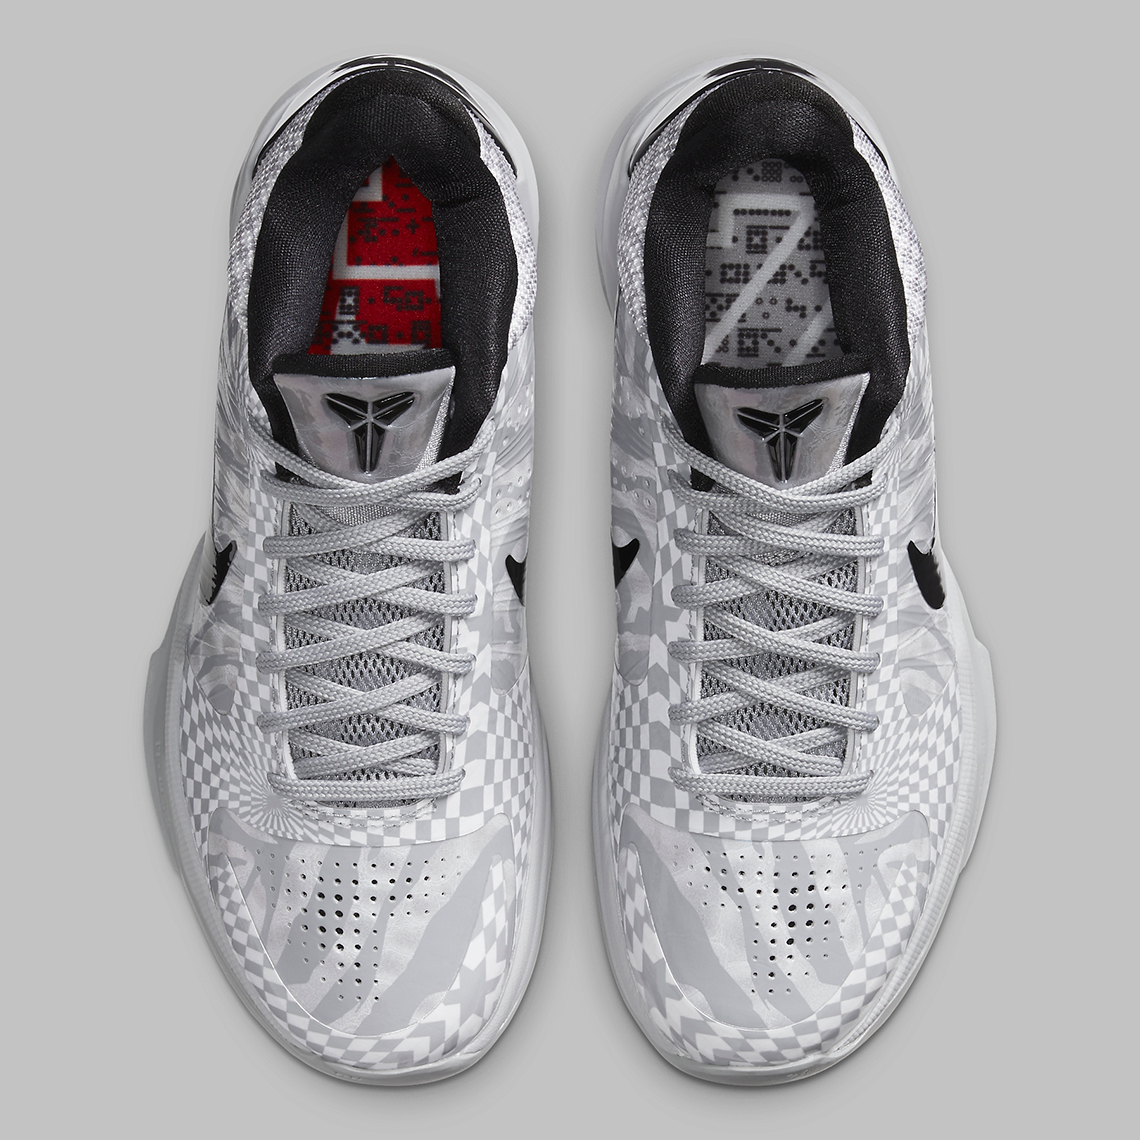 Nike Kobe 5 Protro Grey Black Heart Cd4991 003 8